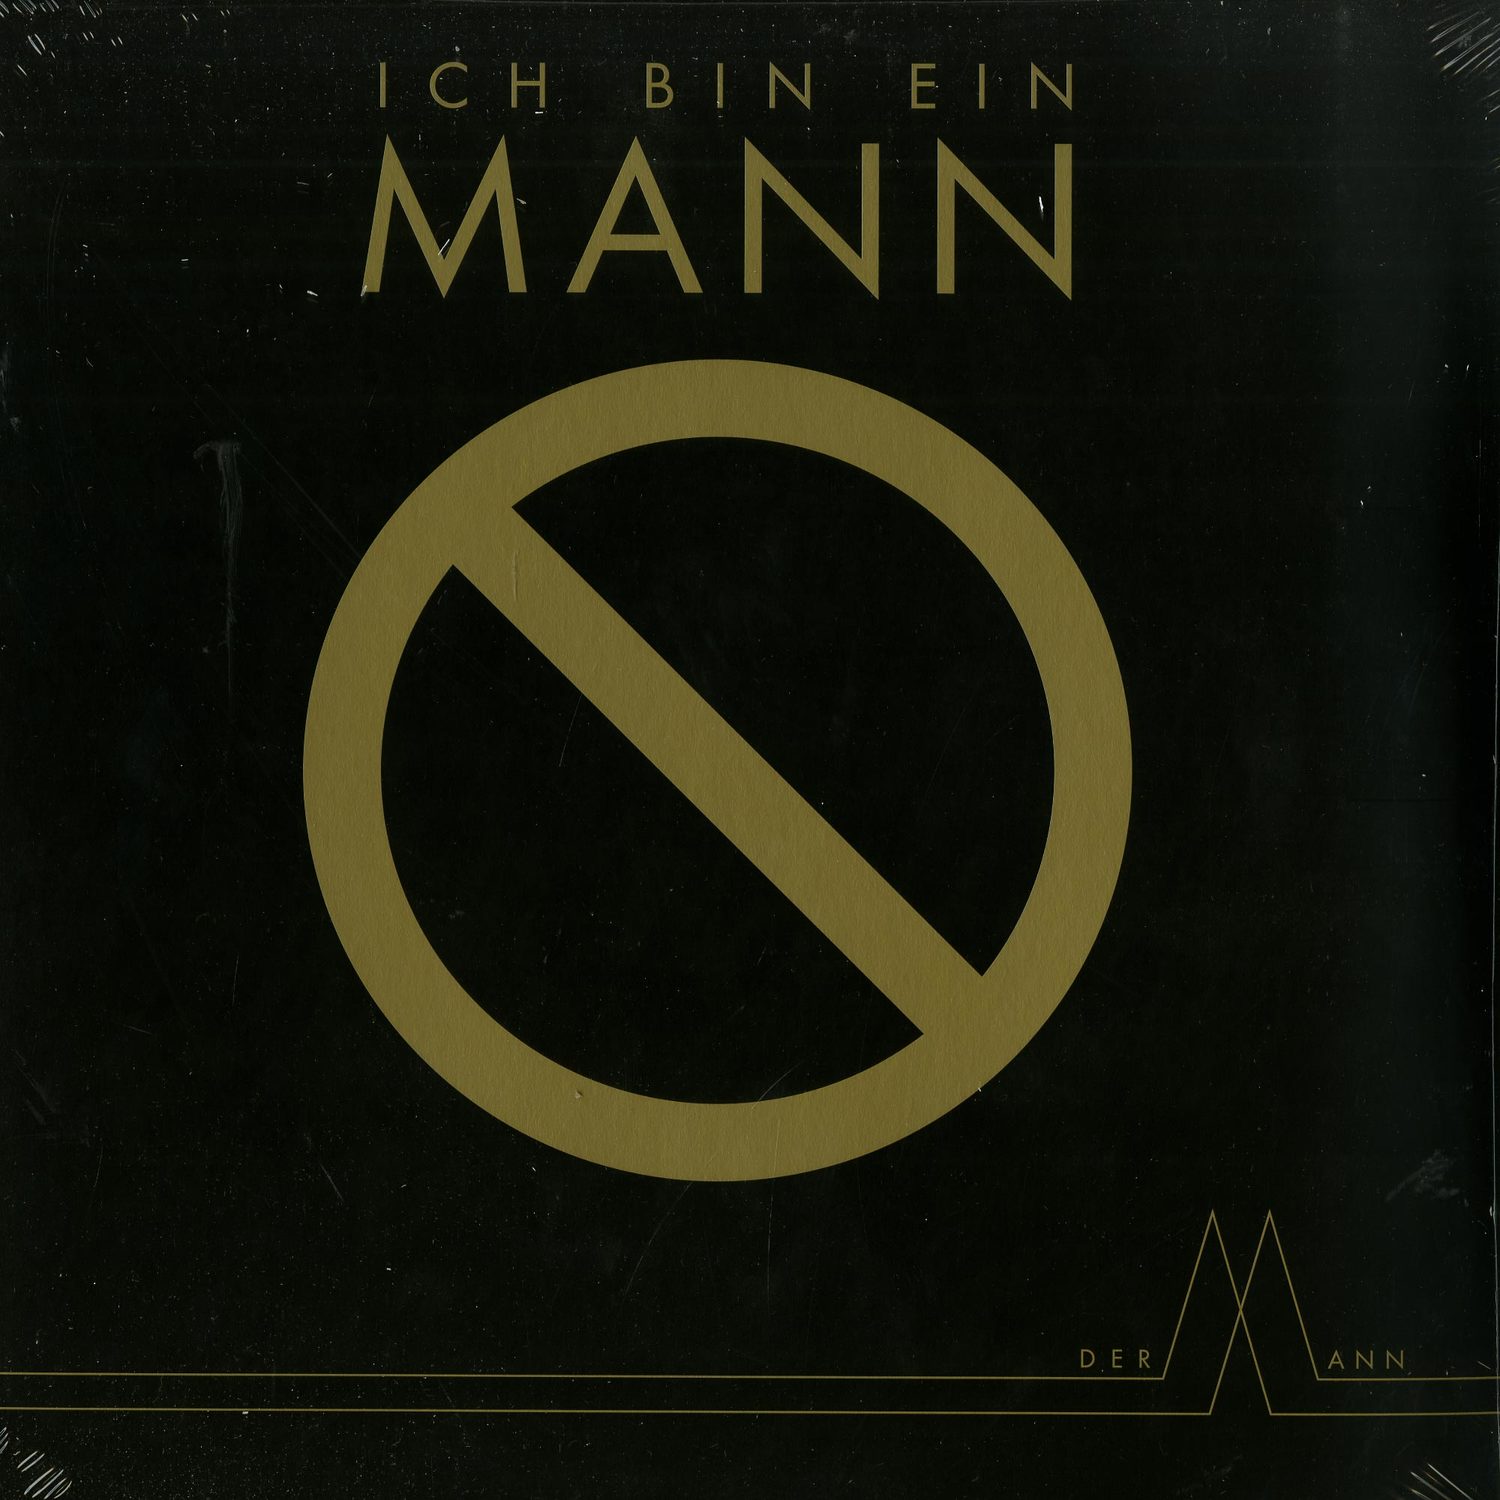 Der Mann - ICH BIN EIN MANN EP